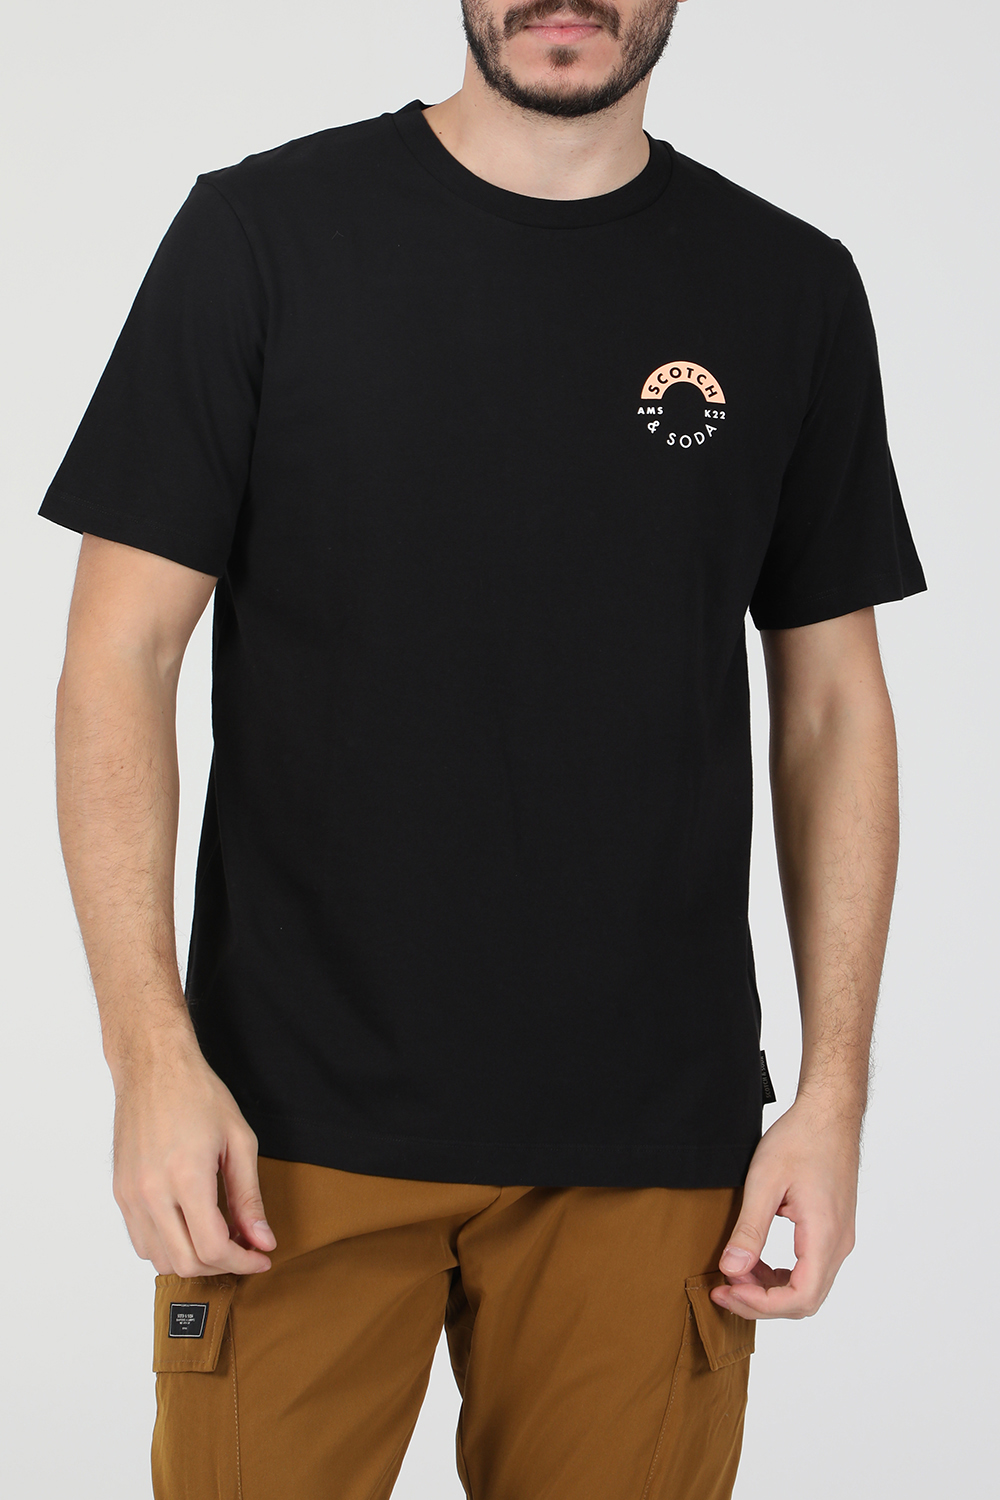 Ανδρικά/Ρούχα/Μπλούζες/Κοντομάνικες SCOTCH & SODA - Ανδρική κοντομάνικη μπλούζα SCOTCH & SODA μαύρη